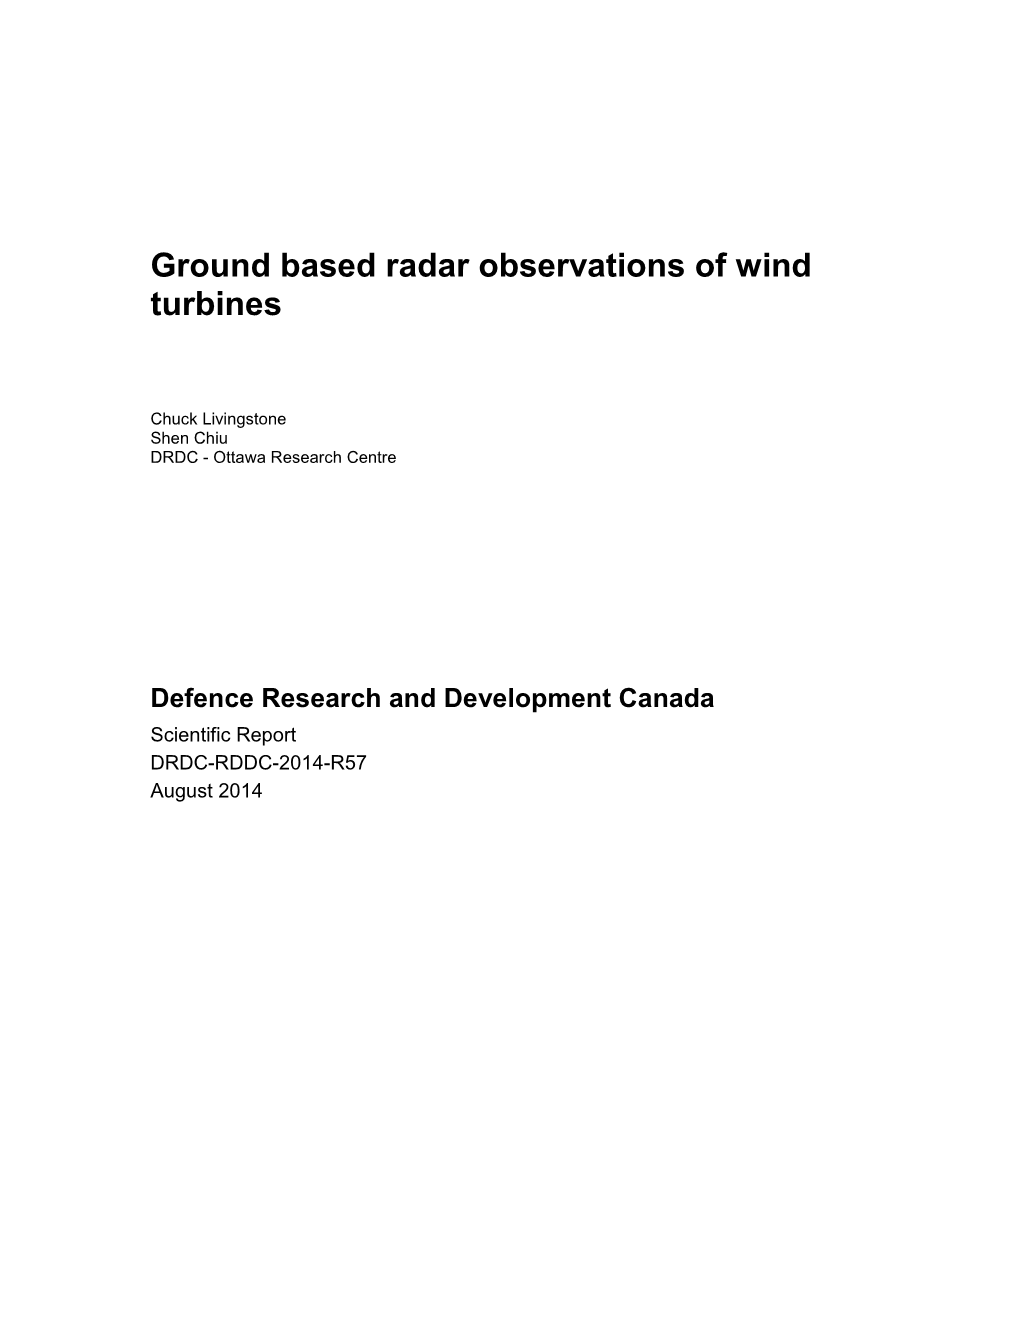 Ground Based Radar Observations of Wind Turbines